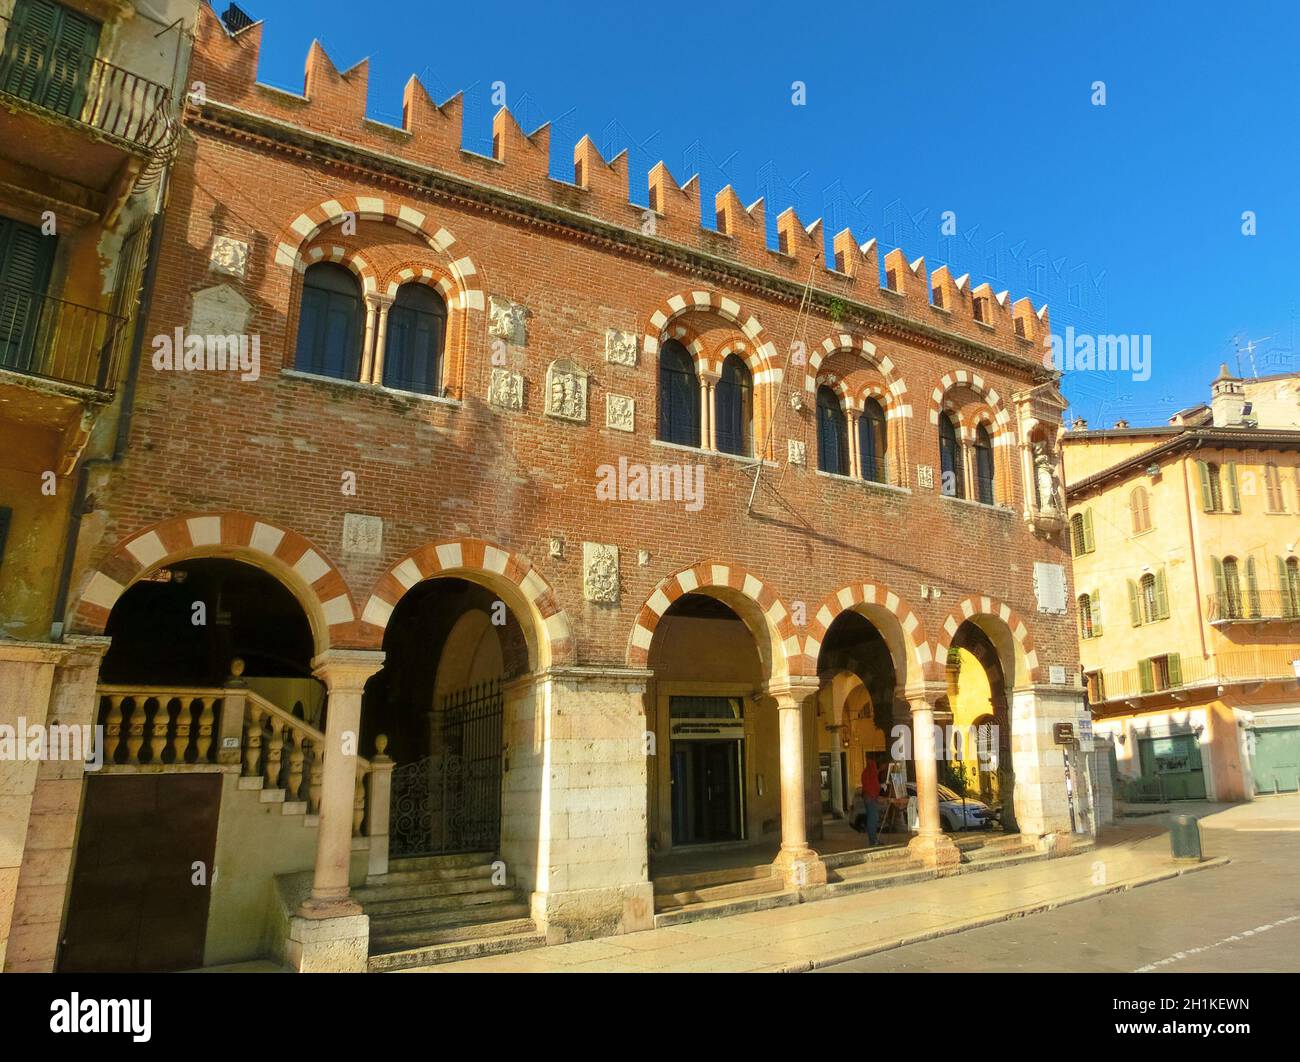 Verona, Italia - 22 settembre 2014: Le mura del Castello Scaligero in via Verona e vista sul mercato con la torre Lamberti, meta turistica del Veneto regi Foto Stock